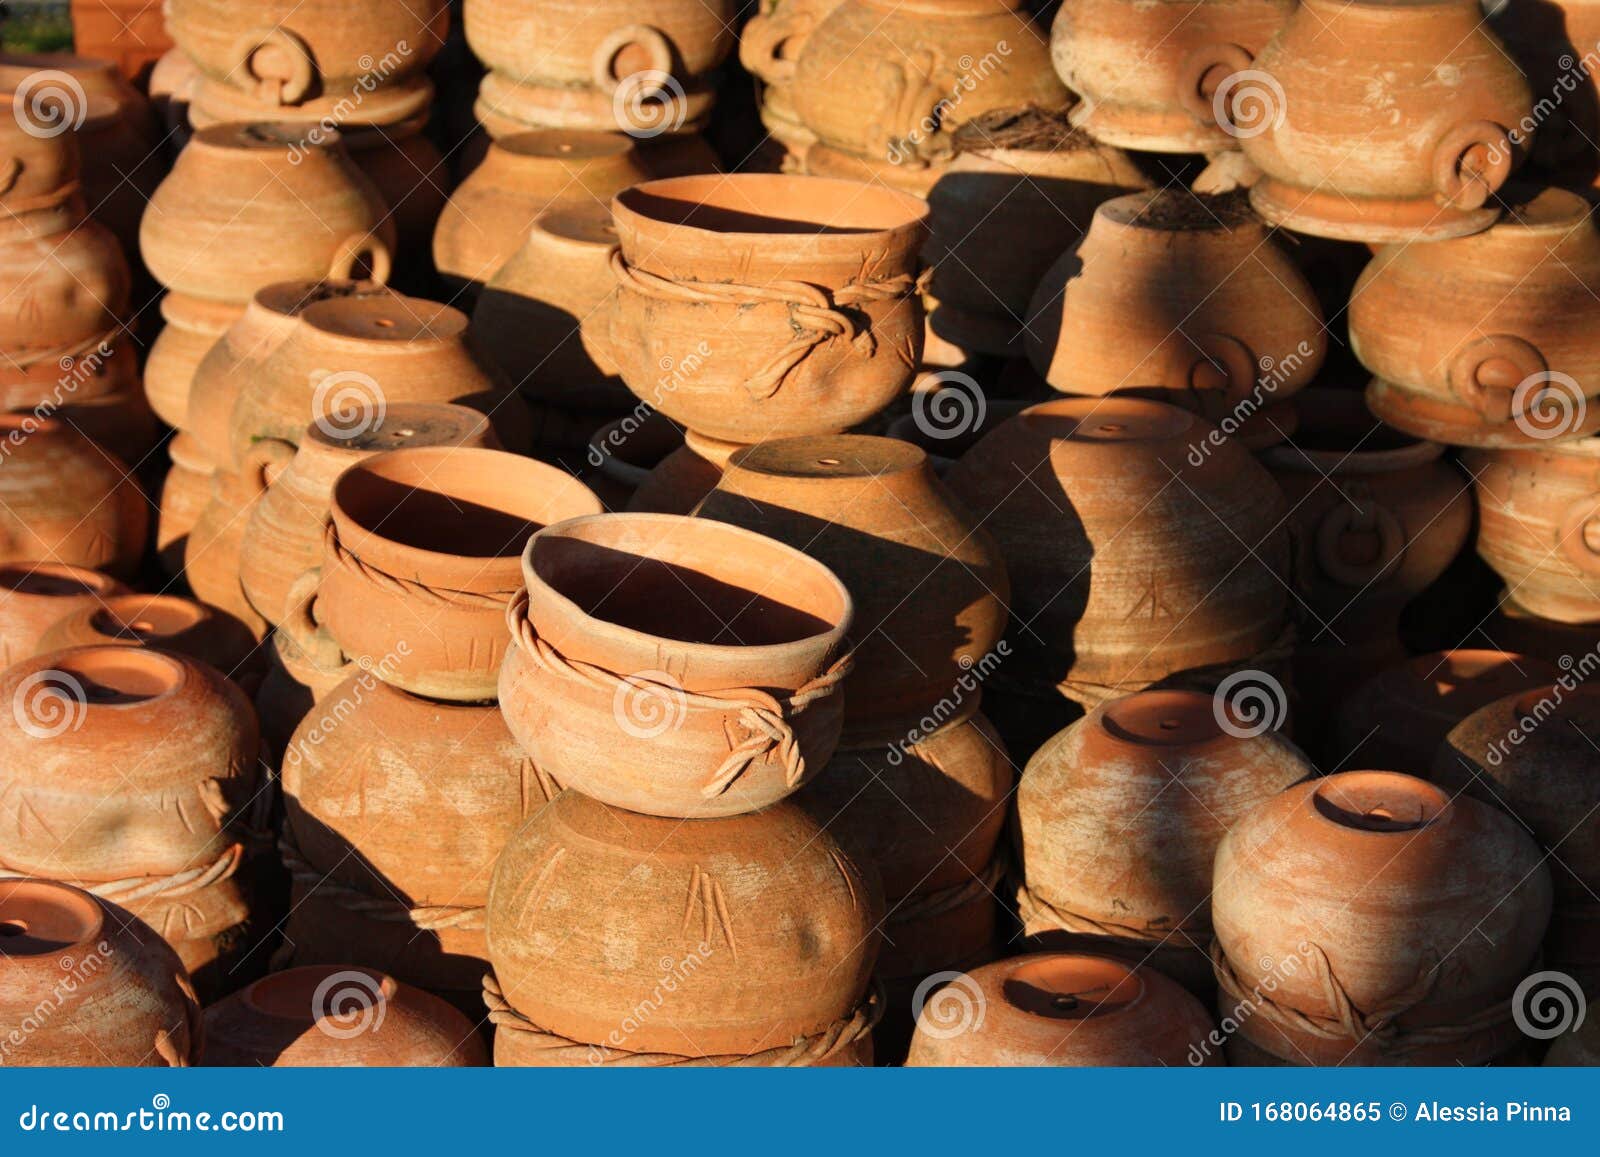 陶瓷 陶器 橙色和棕色赤陶花盆露天车间库存图片 图片包括有陶瓷 陶器 橙色和棕色赤陶花盆露天车间 168064865